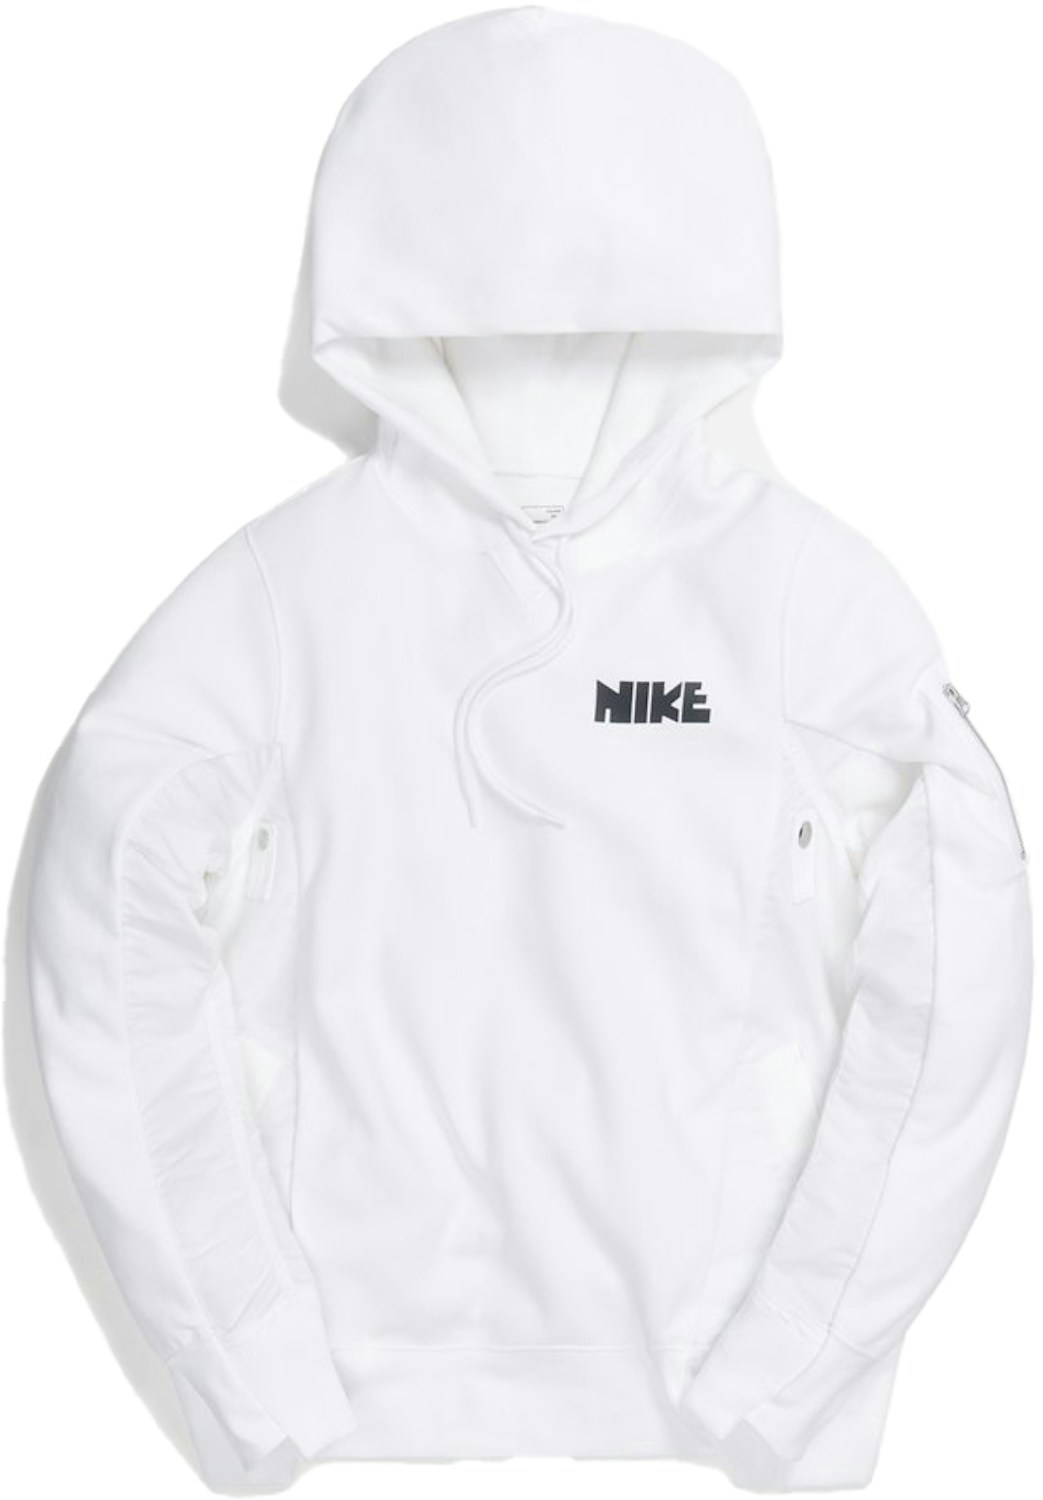 Nike x Sacai Hoodie White